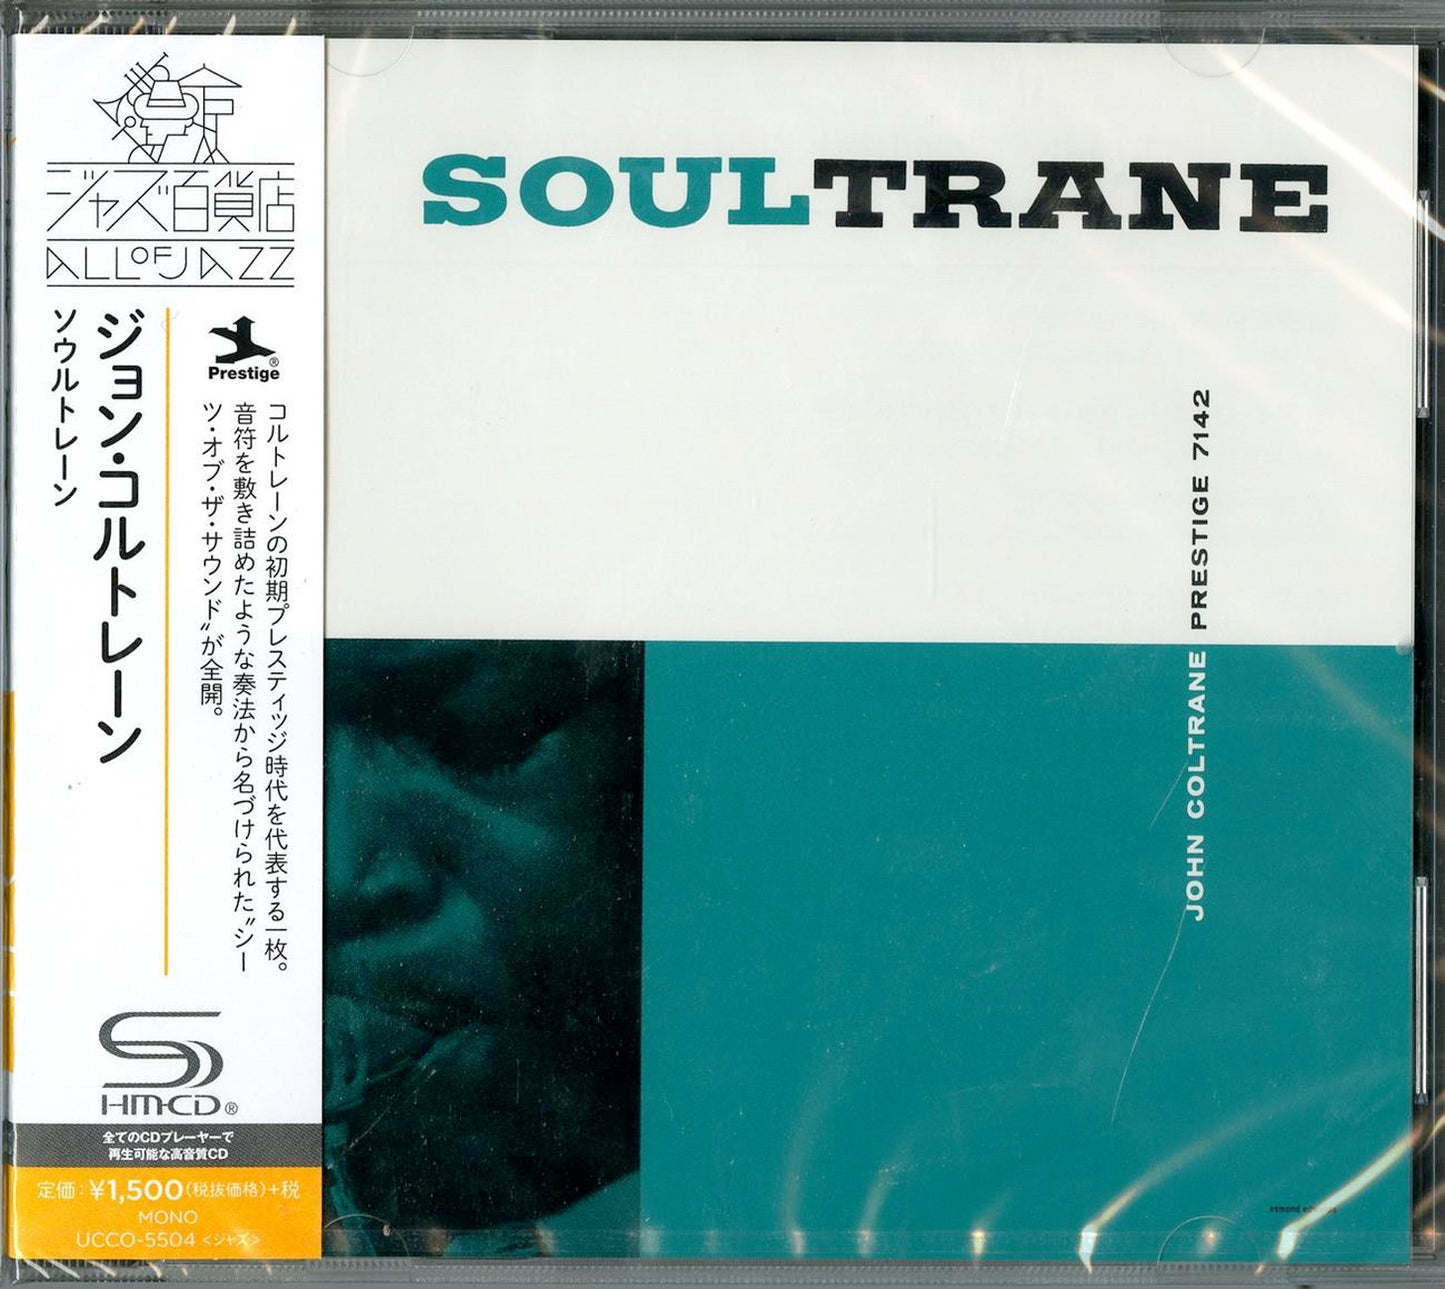 John Coltrane - Soultrane - Japan  SHM-CD